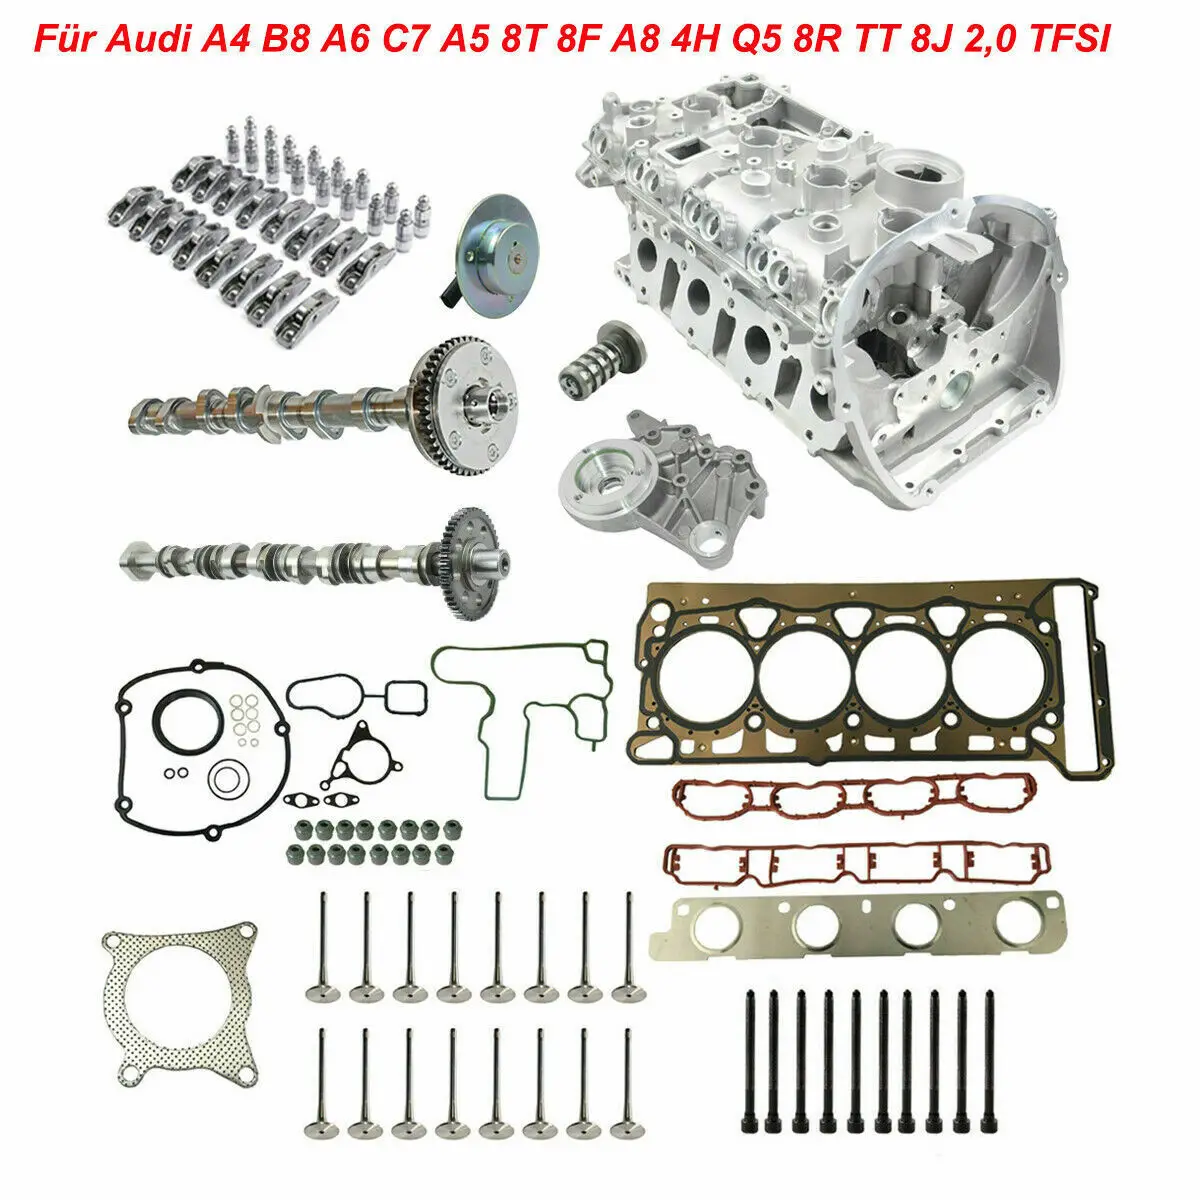 

AP01 Cylinder Head Camshaft Valves Kit For Audi A4 B8 8K A6 C7 A8 4H Q5 8R 2,0 TFSI 06H103064AC, 06H103064L 06H103064LX